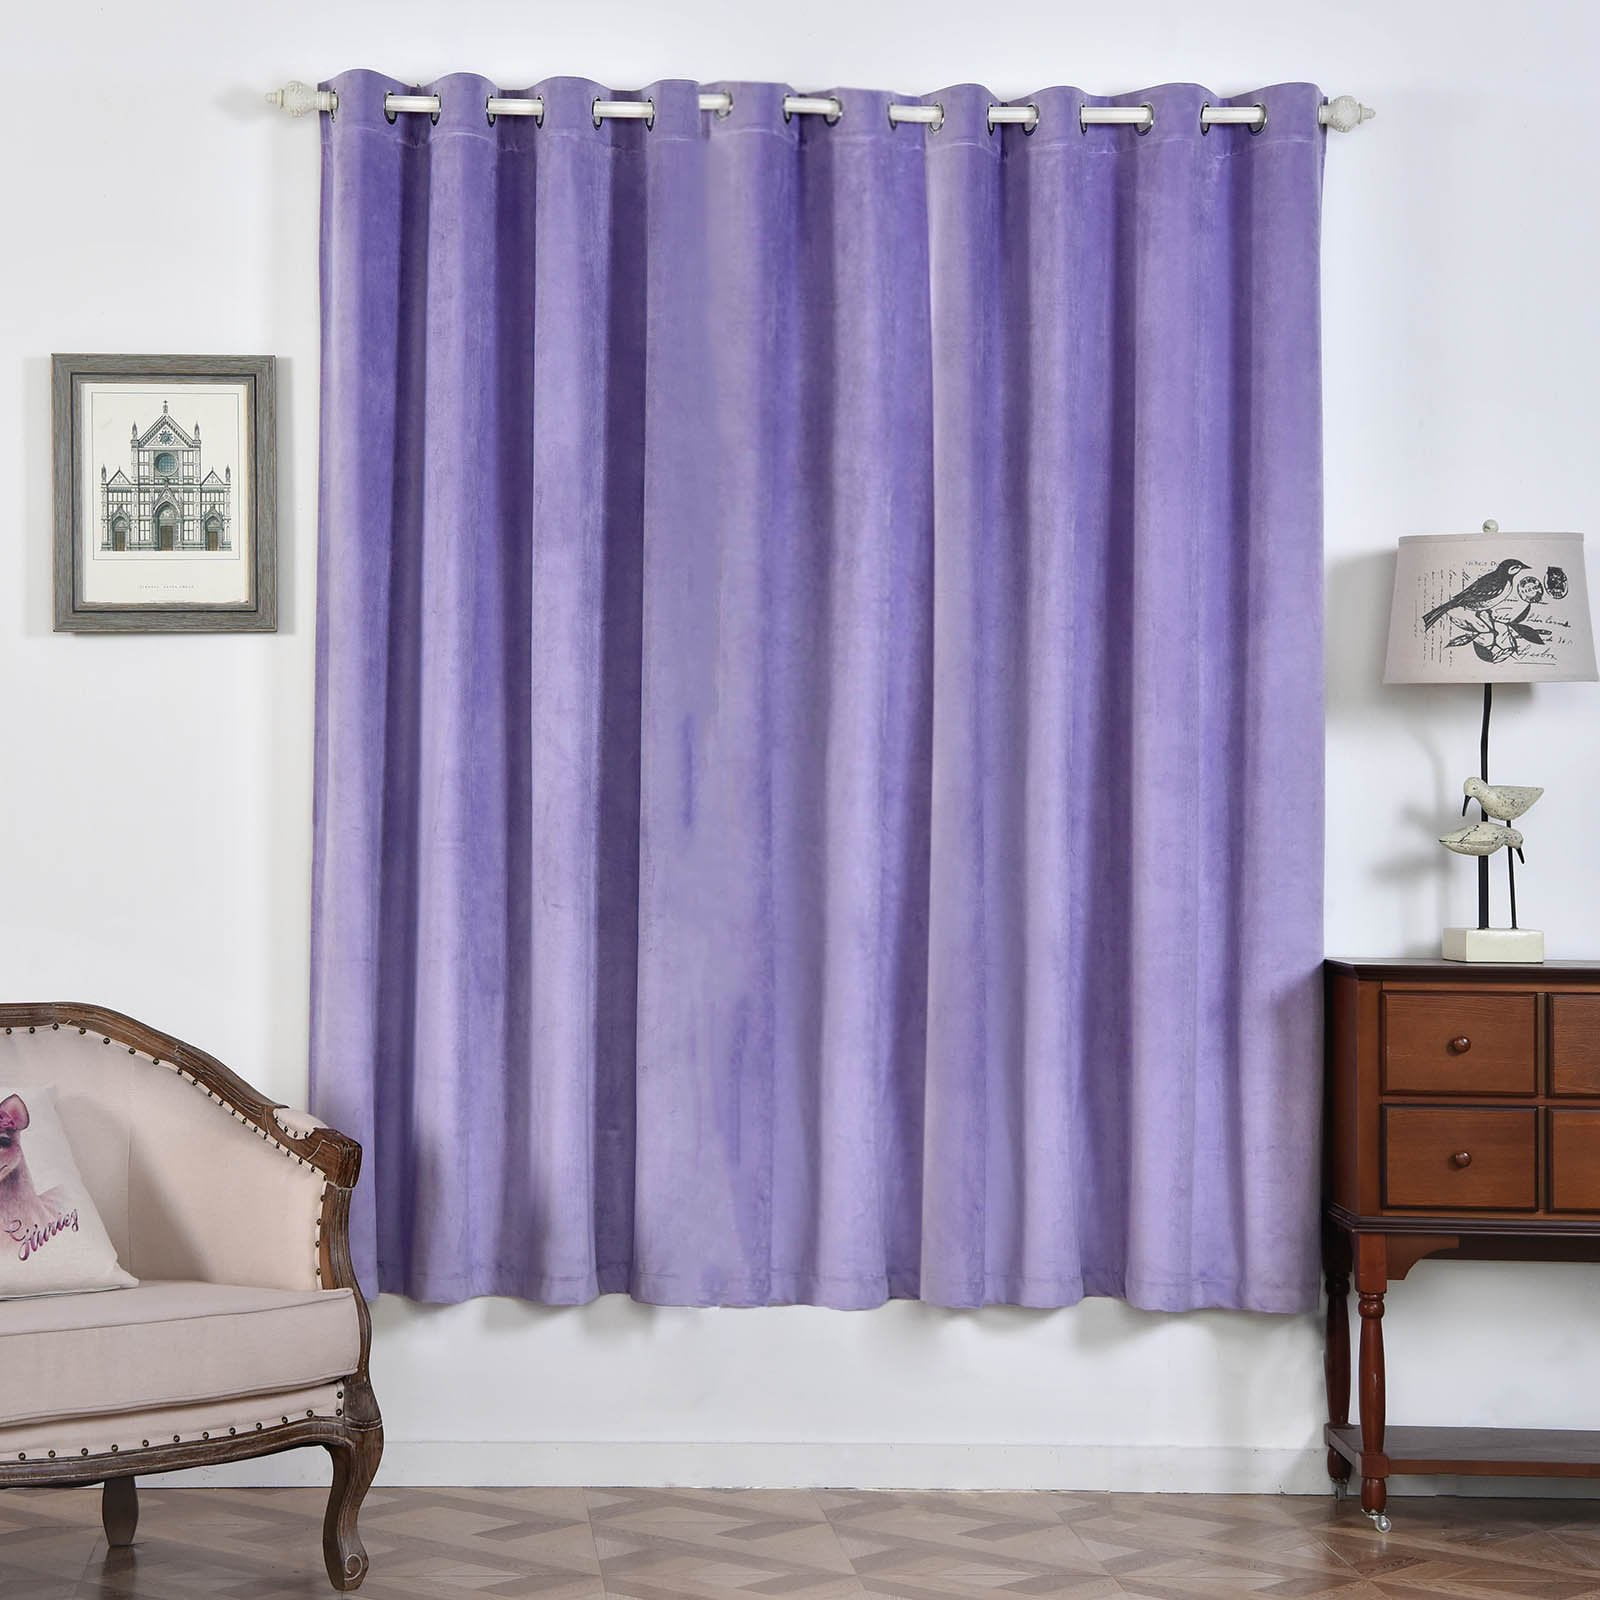 Lavender Blackout Curtains | 2 Packs | 52 x 84 Inch Blackout Noise